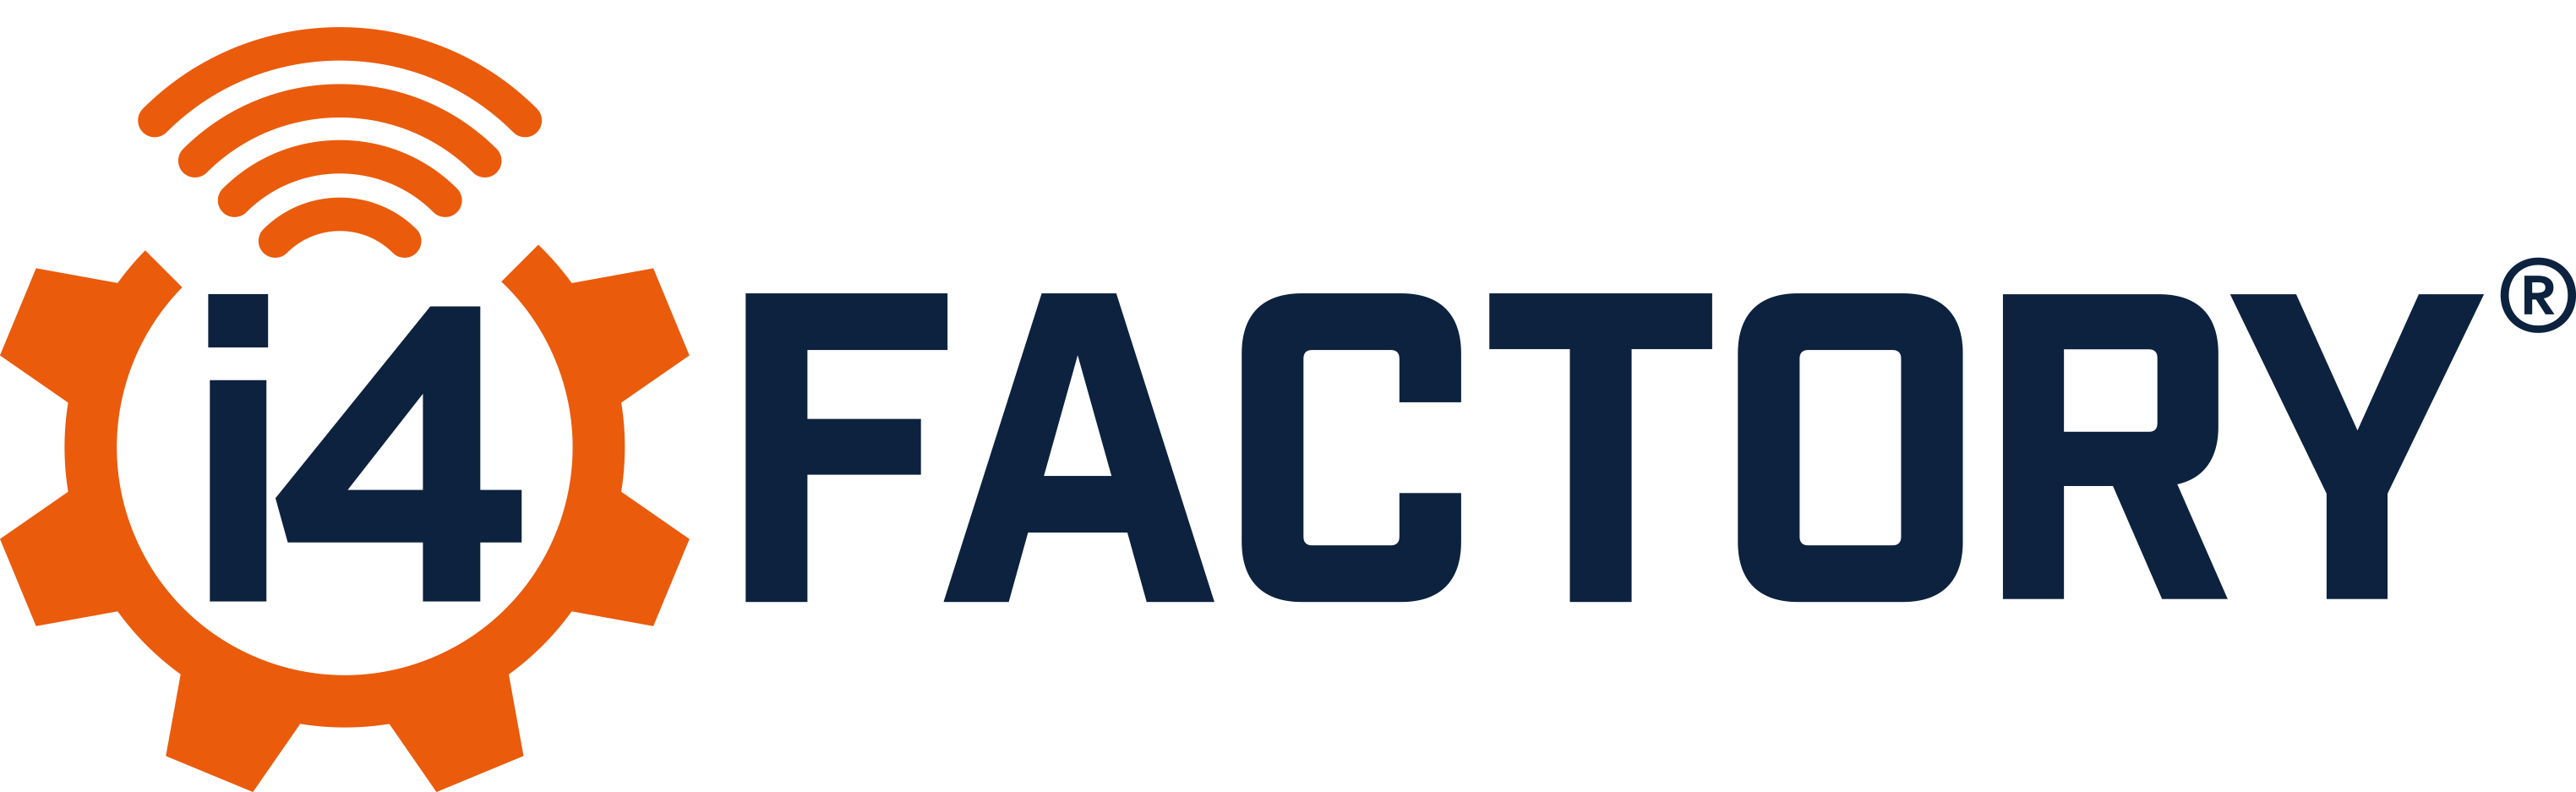 Logo i4 FACTORY AS